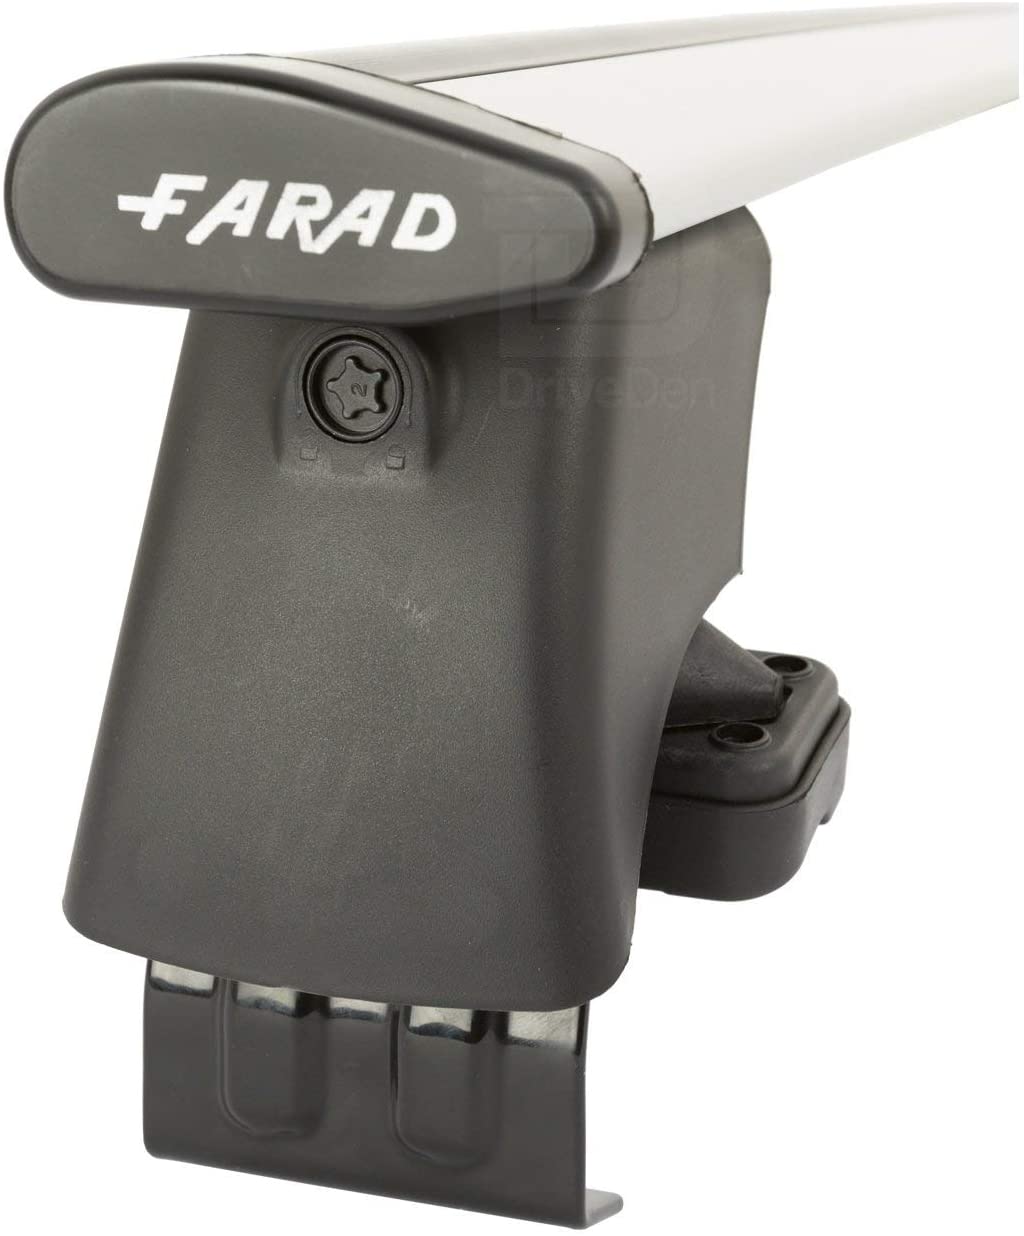 FARAD-Kit H2 per barre portatutto - Toyota Iq 2008-2015 (senza corrimano)